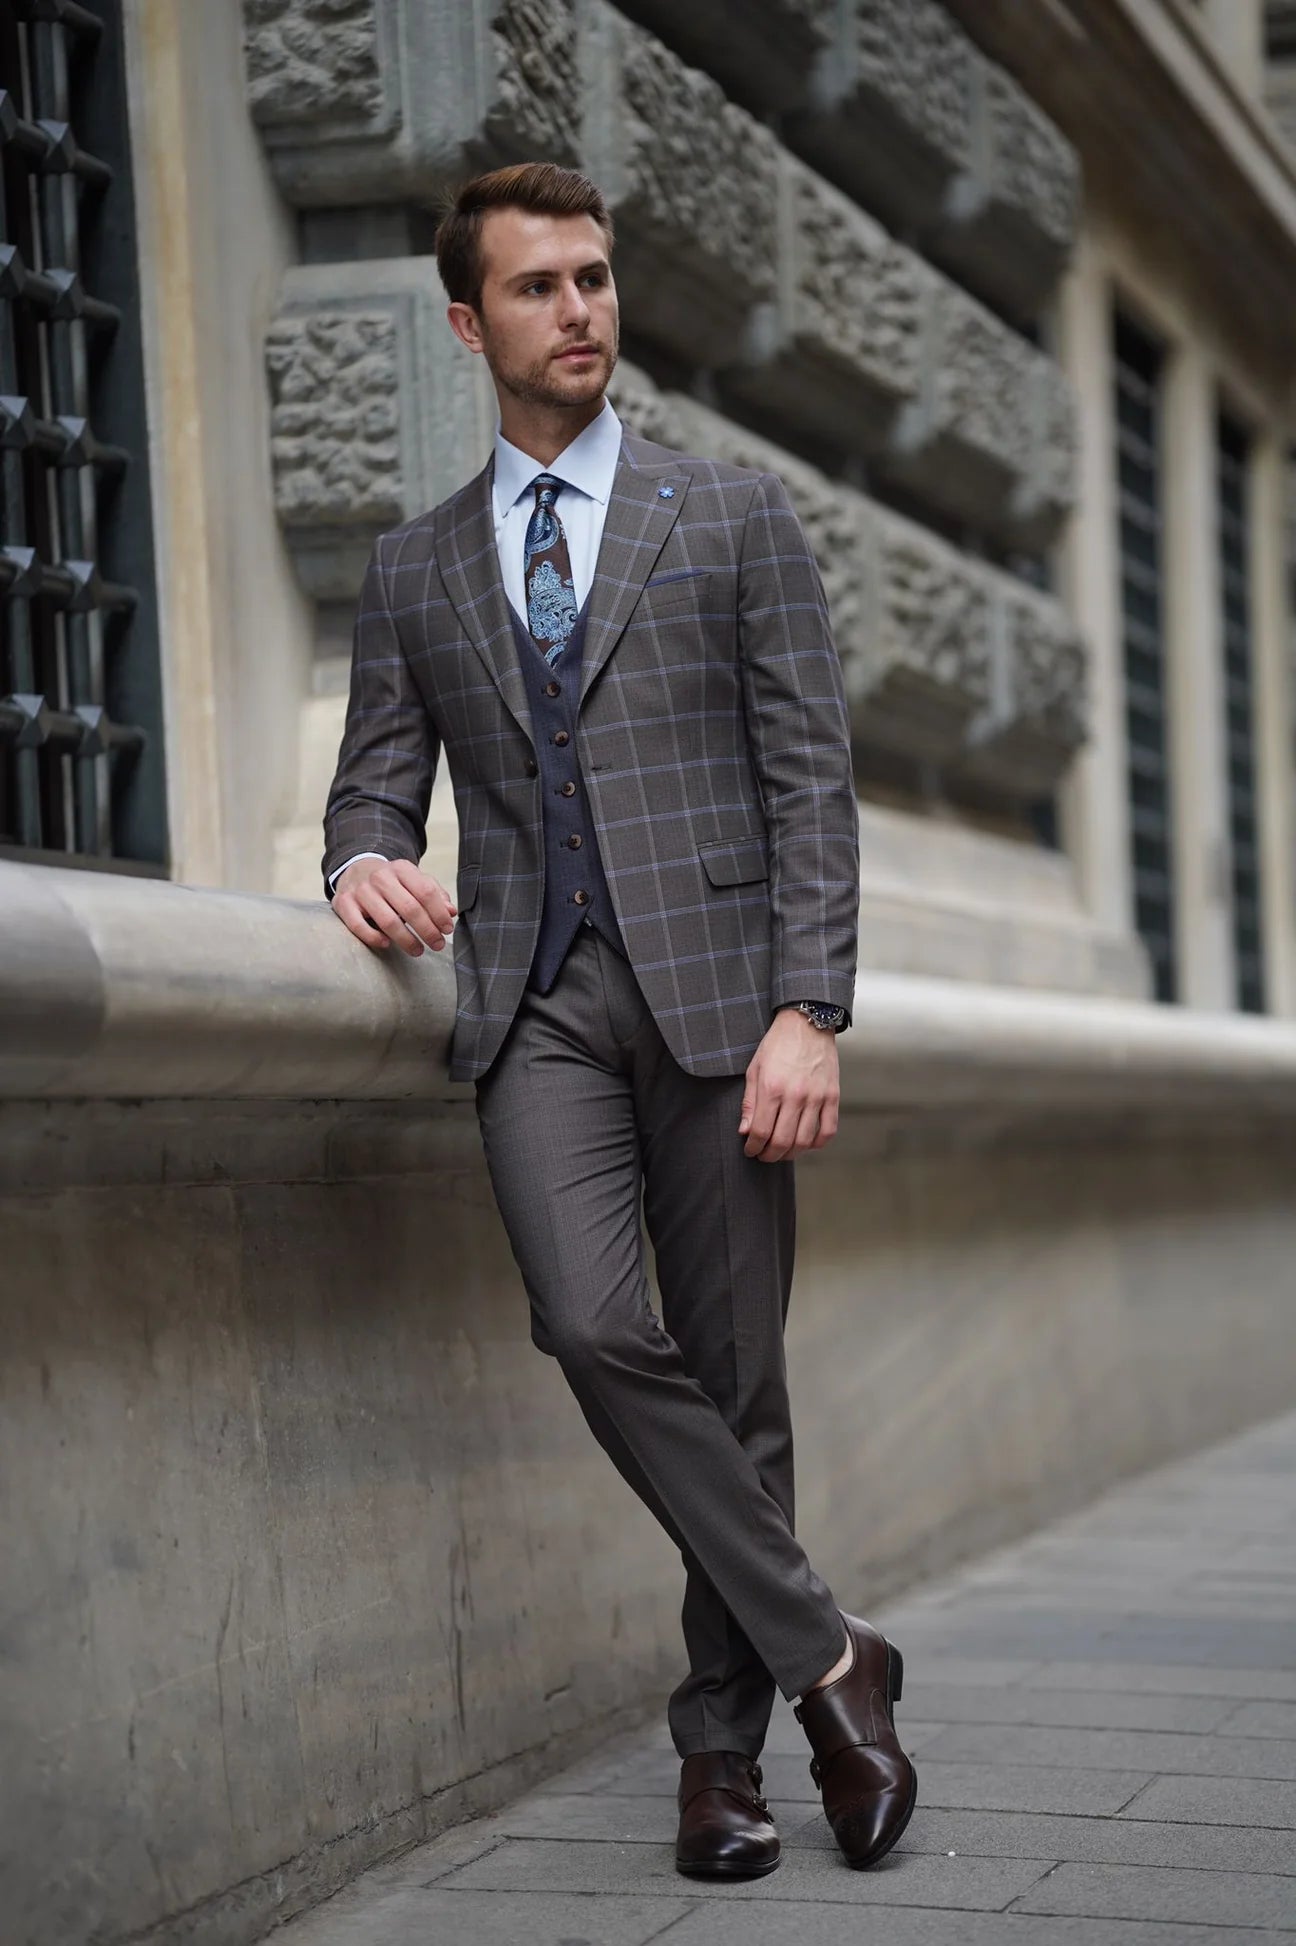 Bojoni Ravenna Slim Fit Plaid Brown Wool Combination Suit